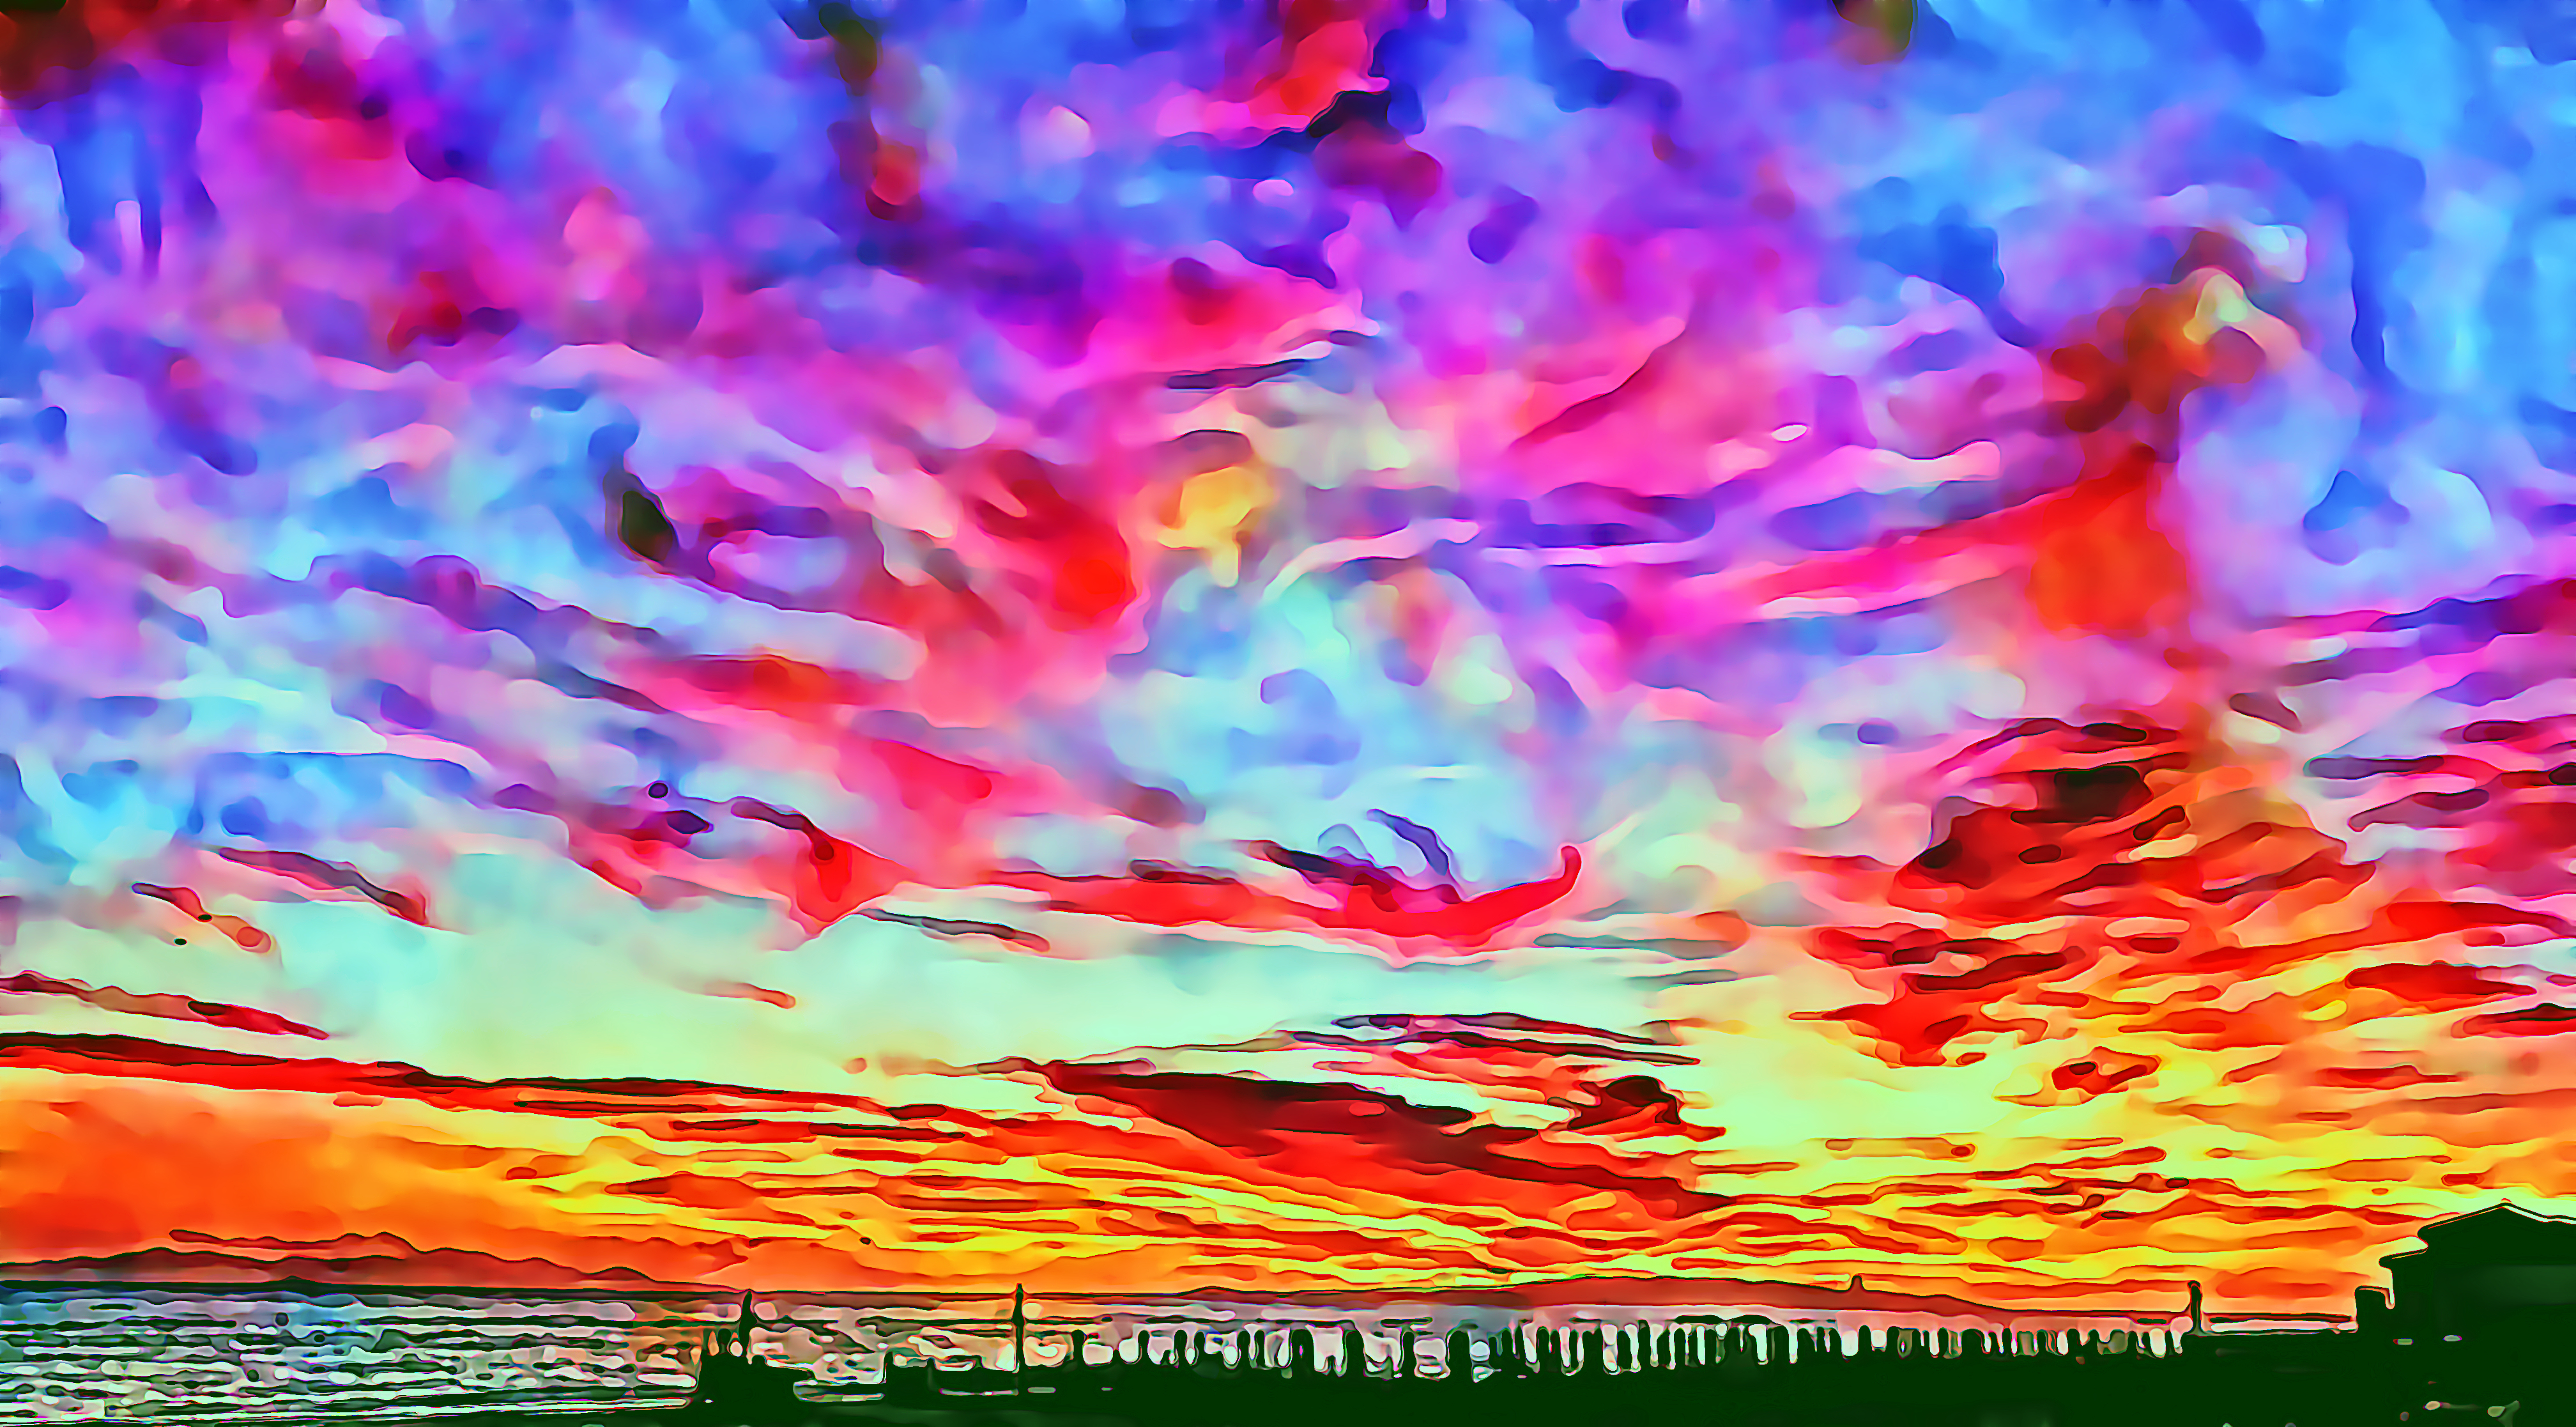 Siamo nuvole del cielo della Coscienza, illuminate dal Sole della Vita (Francesco Galgani's art, September 12, 2022)